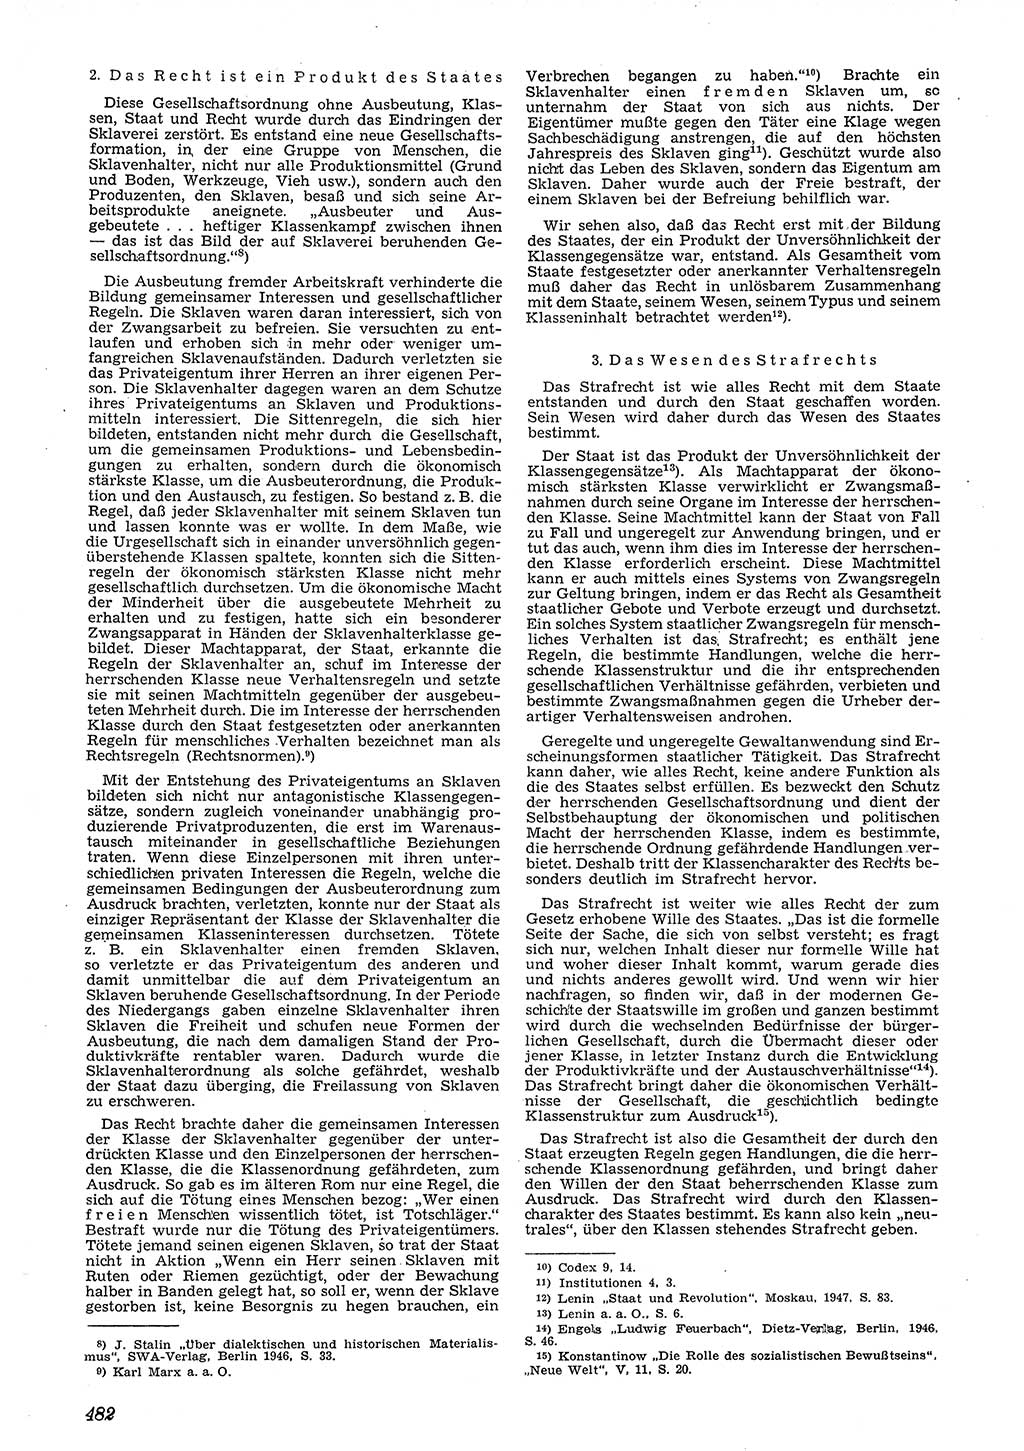 Neue Justiz (NJ), Zeitschrift für Recht und Rechtswissenschaft [Deutsche Demokratische Republik (DDR)], 4. Jahrgang 1950, Seite 482 (NJ DDR 1950, S. 482)